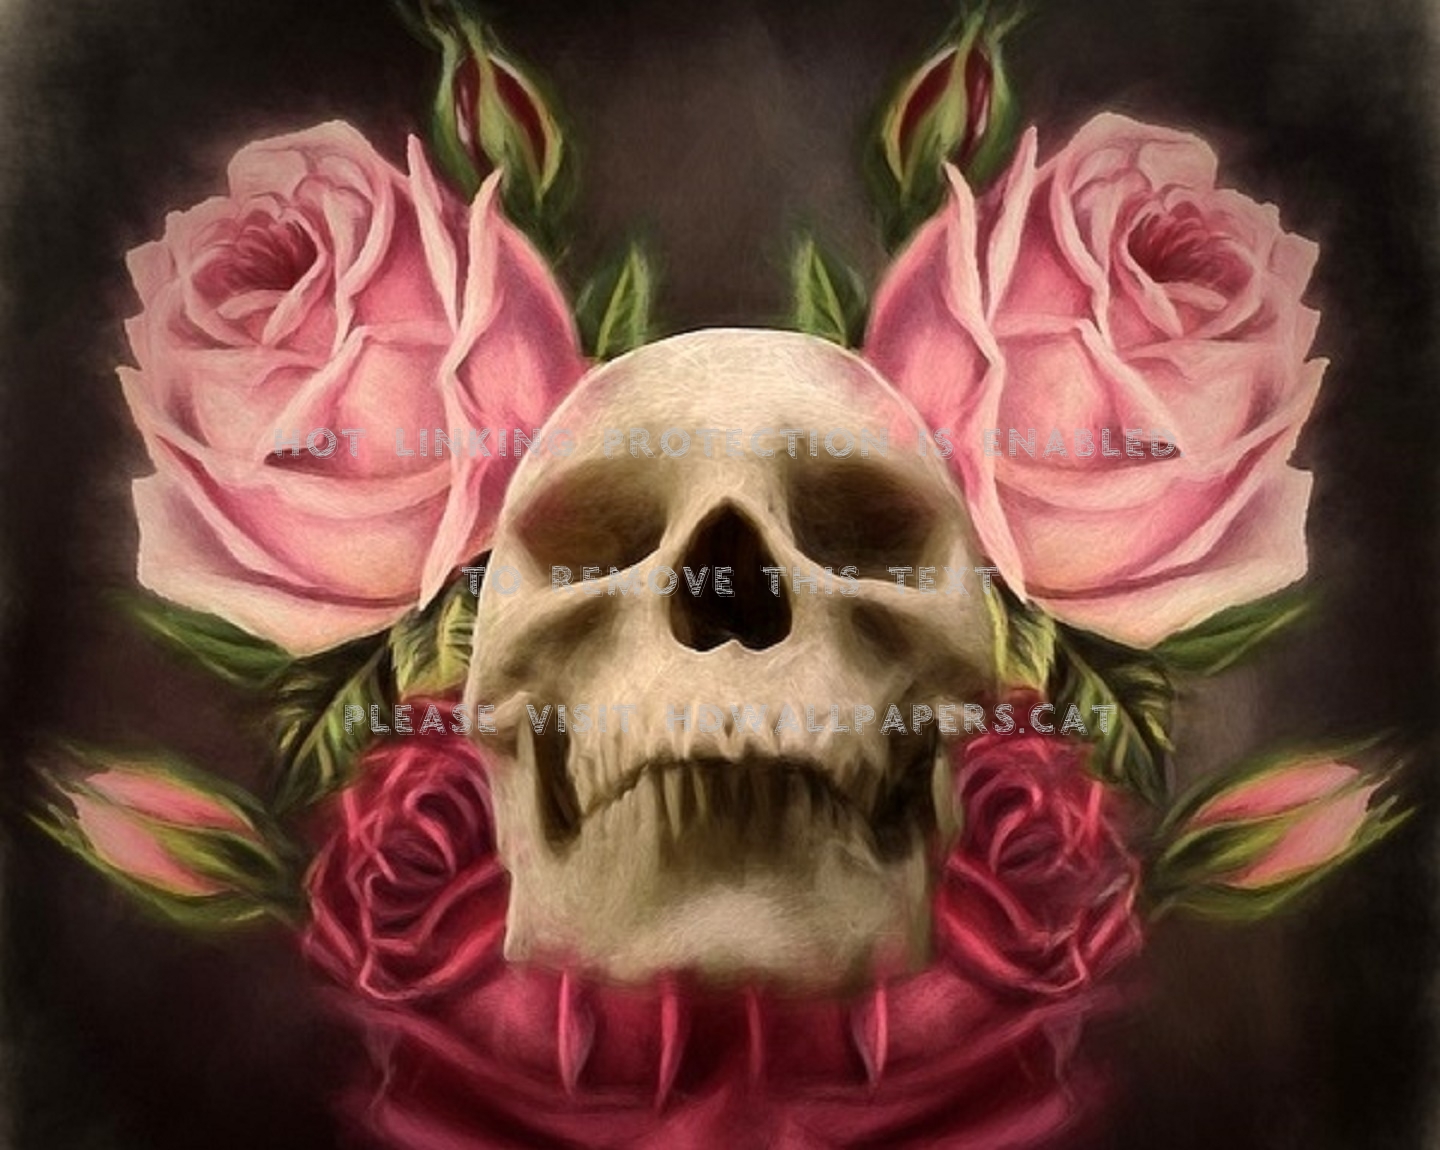 Skull & Roses Fantasy Holiday Halloween Art - Skull - HD Wallpaper 